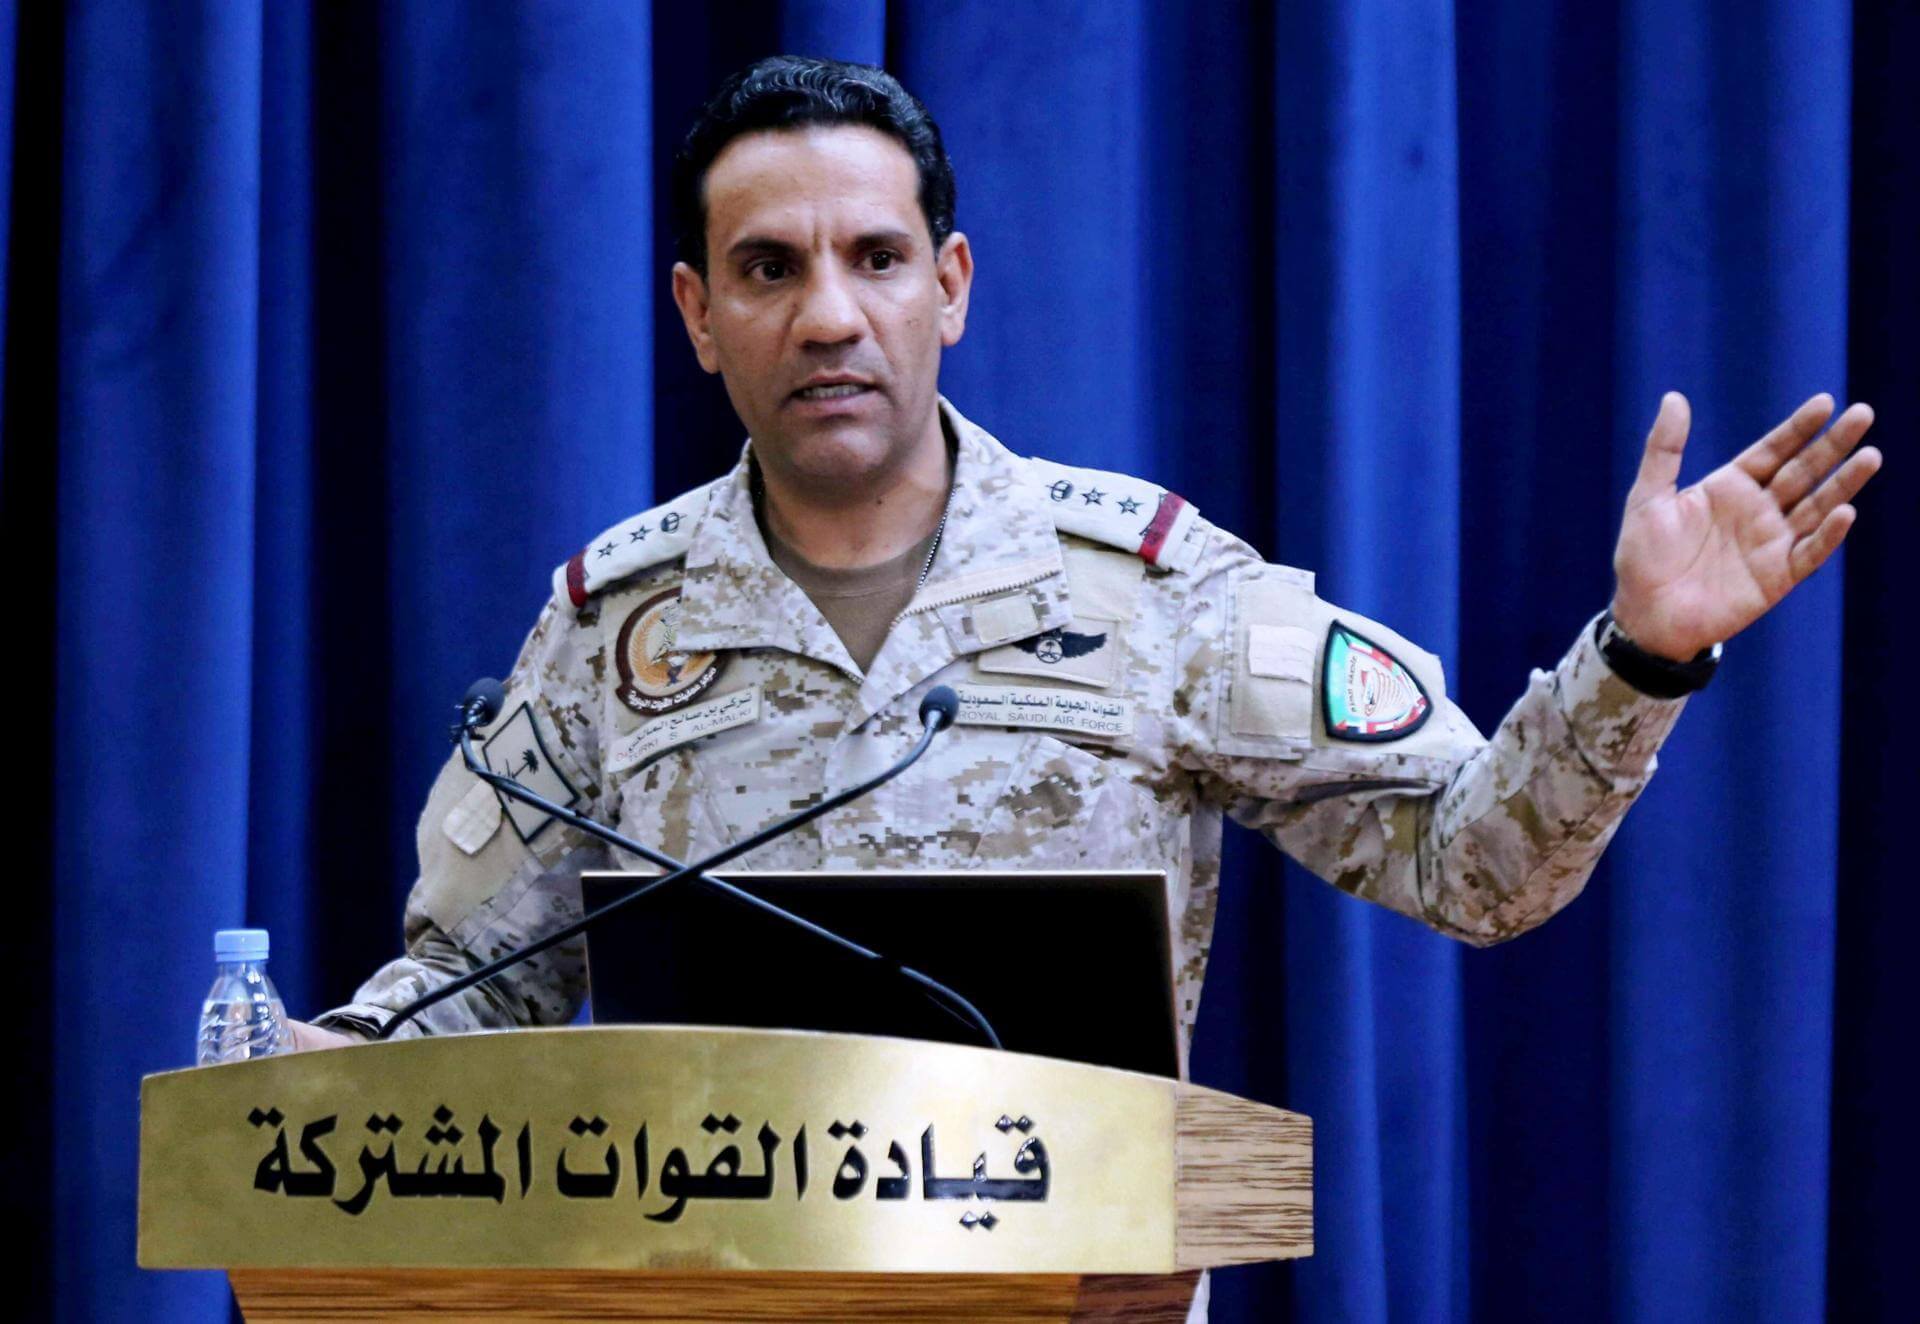 ناطق التحالف : قوات التحالف الجوية نفذت عملية عسكرية ضد أهداف عسكرية مشروعة بصنعاء